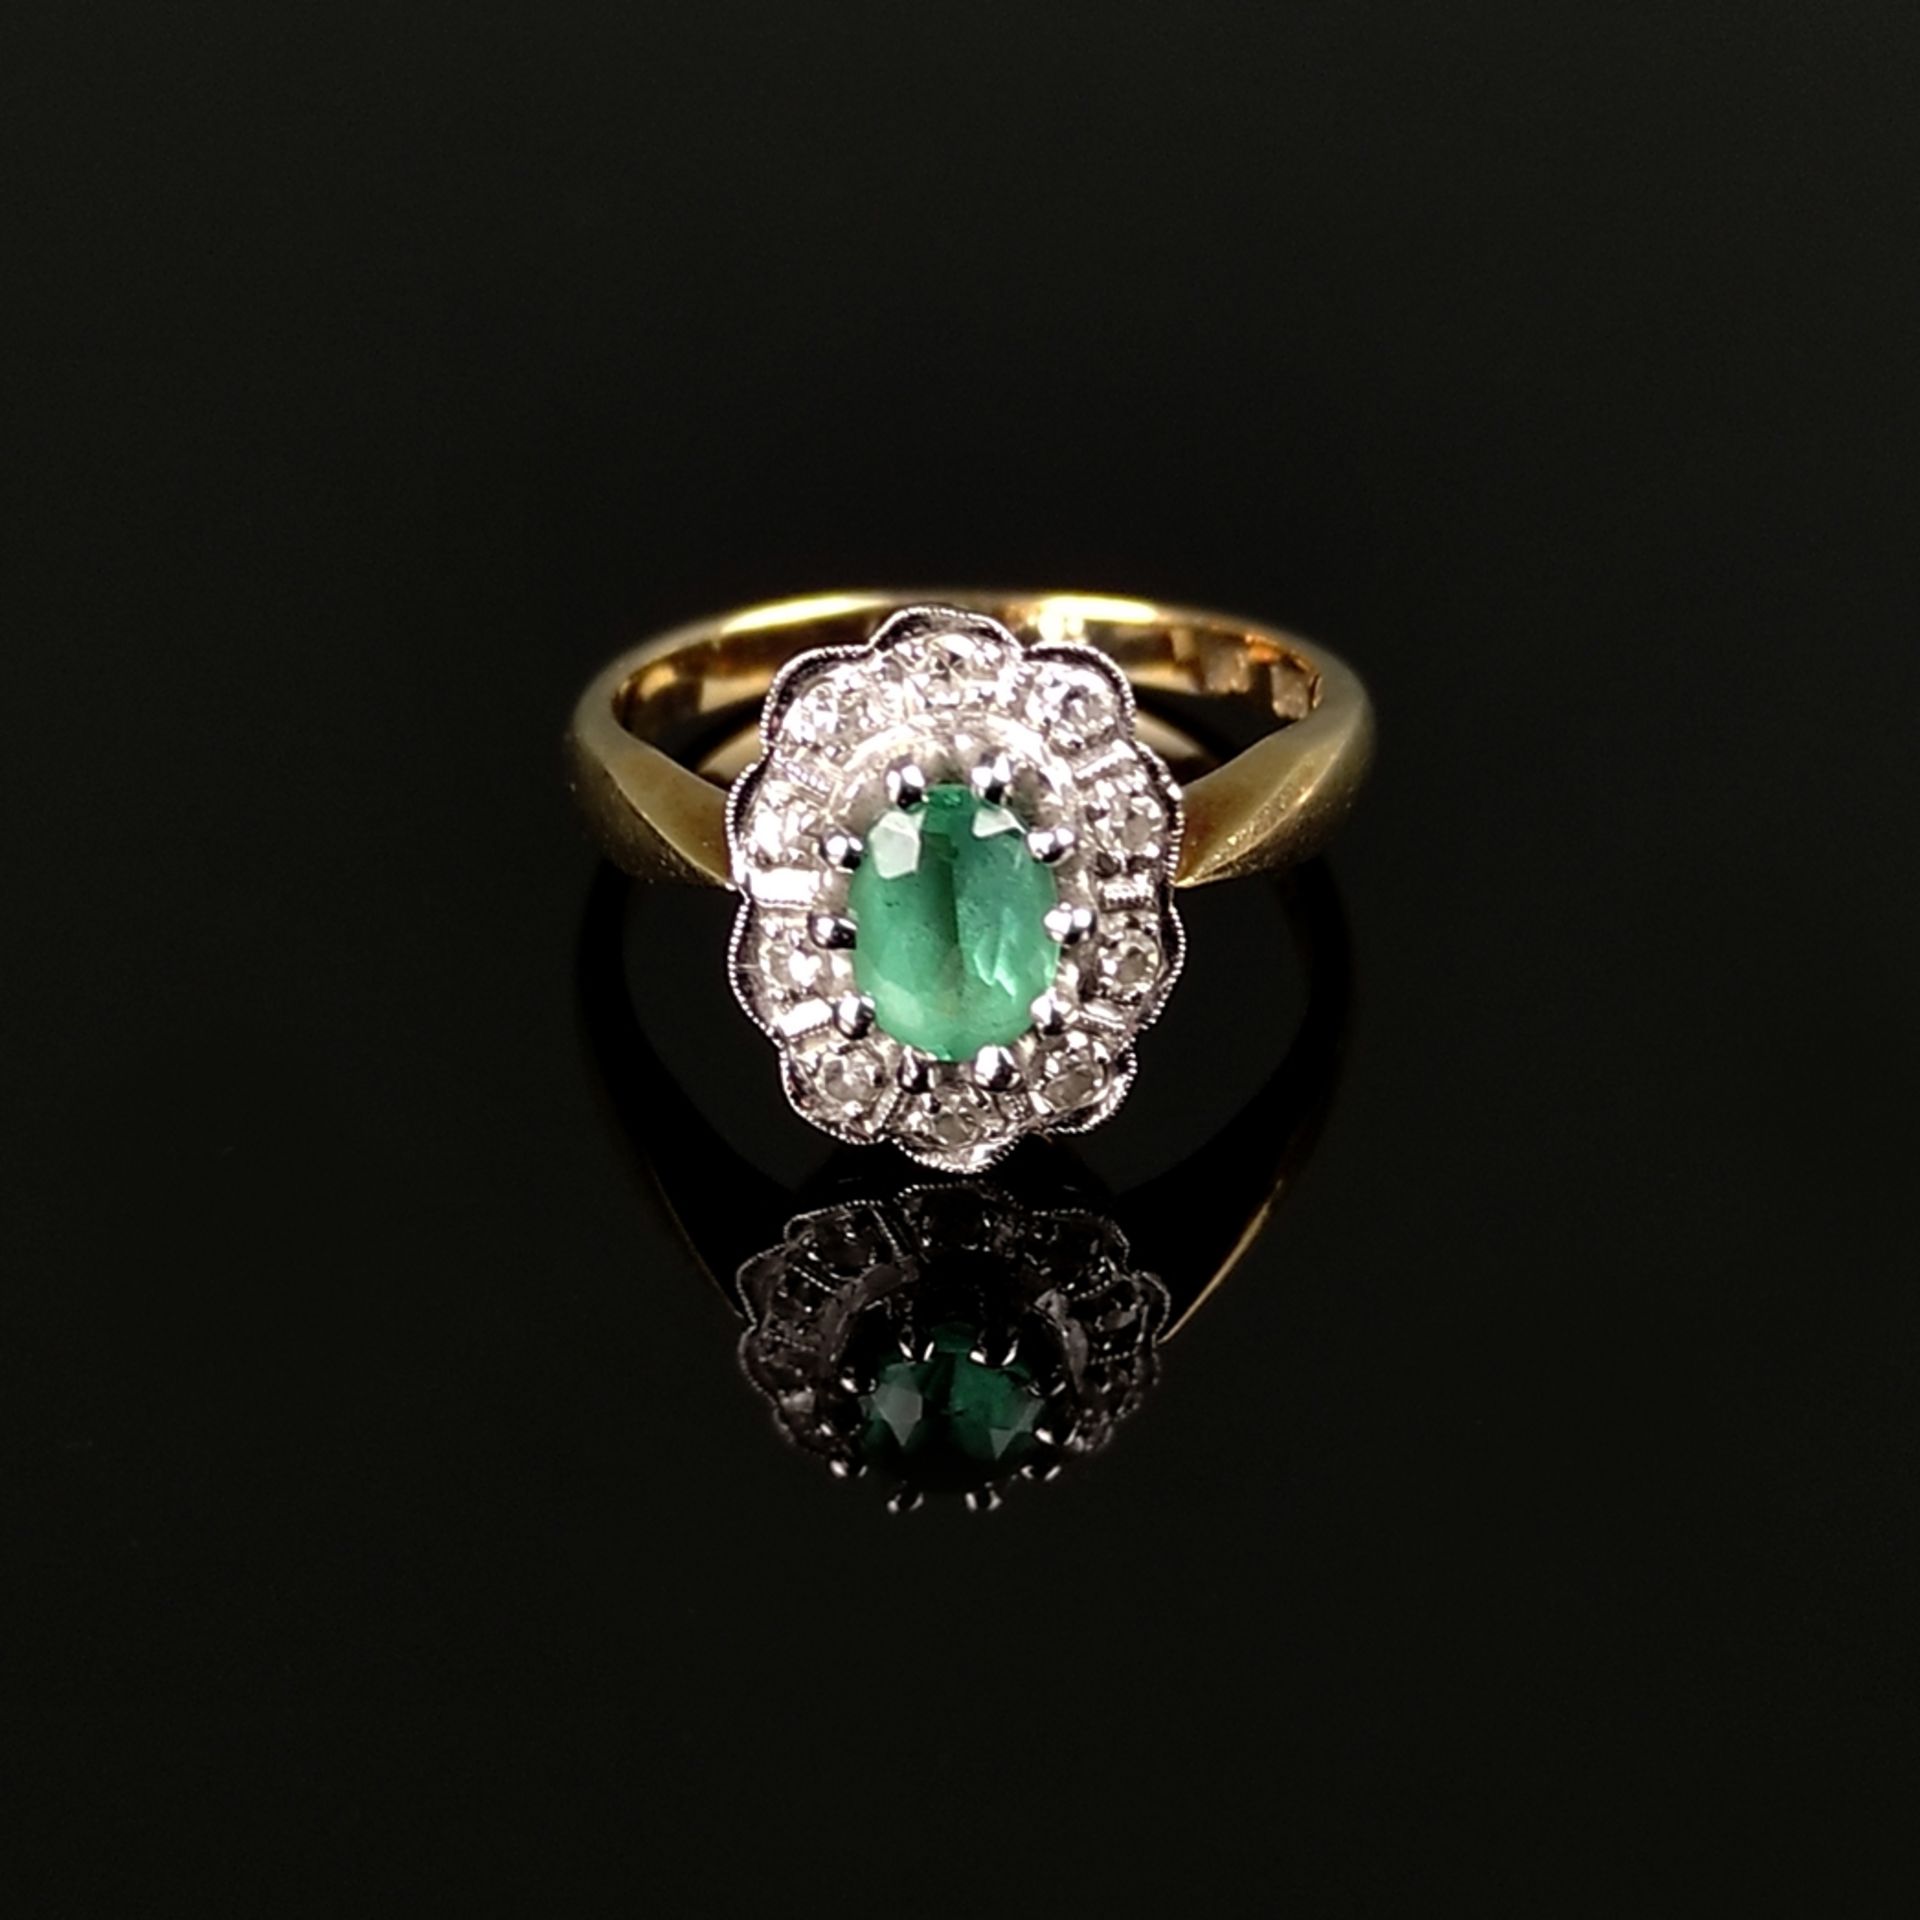 Smaragd-Diamantring, 585/14K Weiß-/Gelbgold (punziert), 3,59g, mittig besetzt mit facettiertem oval - Bild 2 aus 3